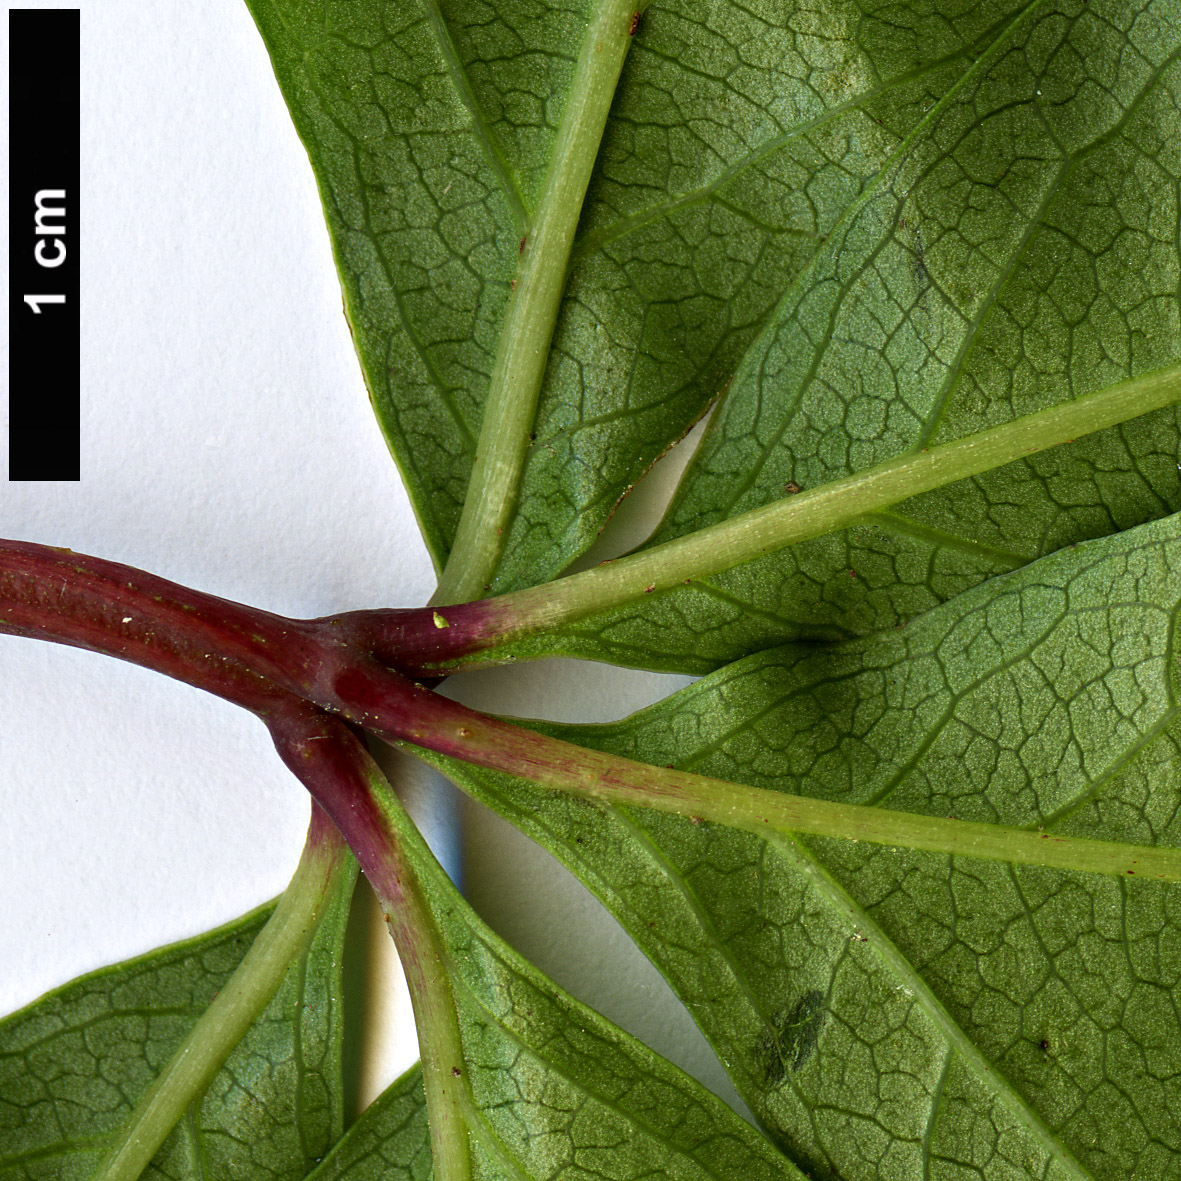 High resolution image: Family: Vitaceae - Genus: Parthenocissus - Taxon: quinquefolia